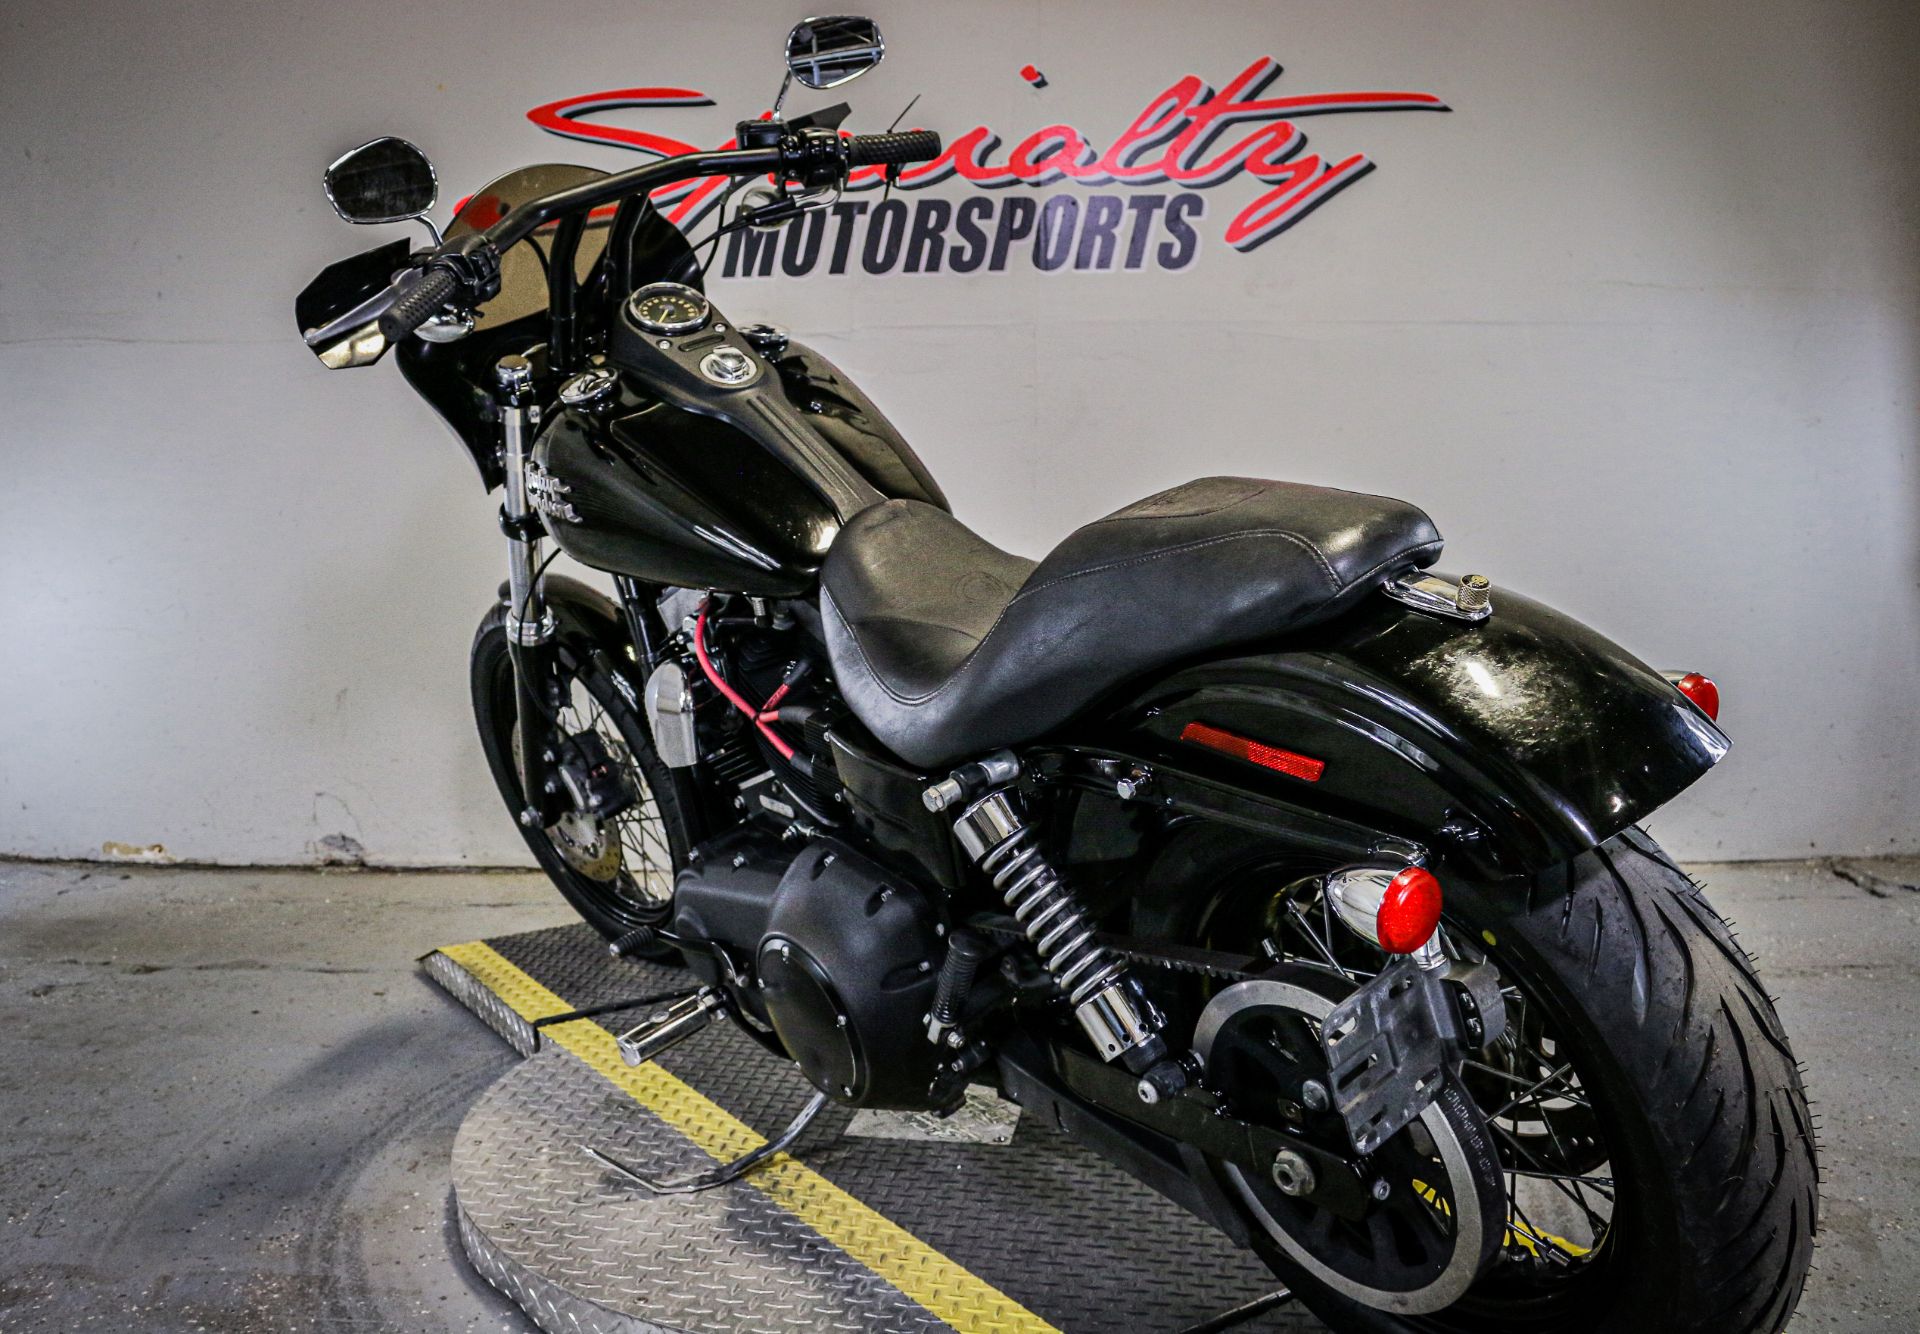 2014 Harley-Davidson Dyna® Street Bob® in Sacramento, California - Photo 3